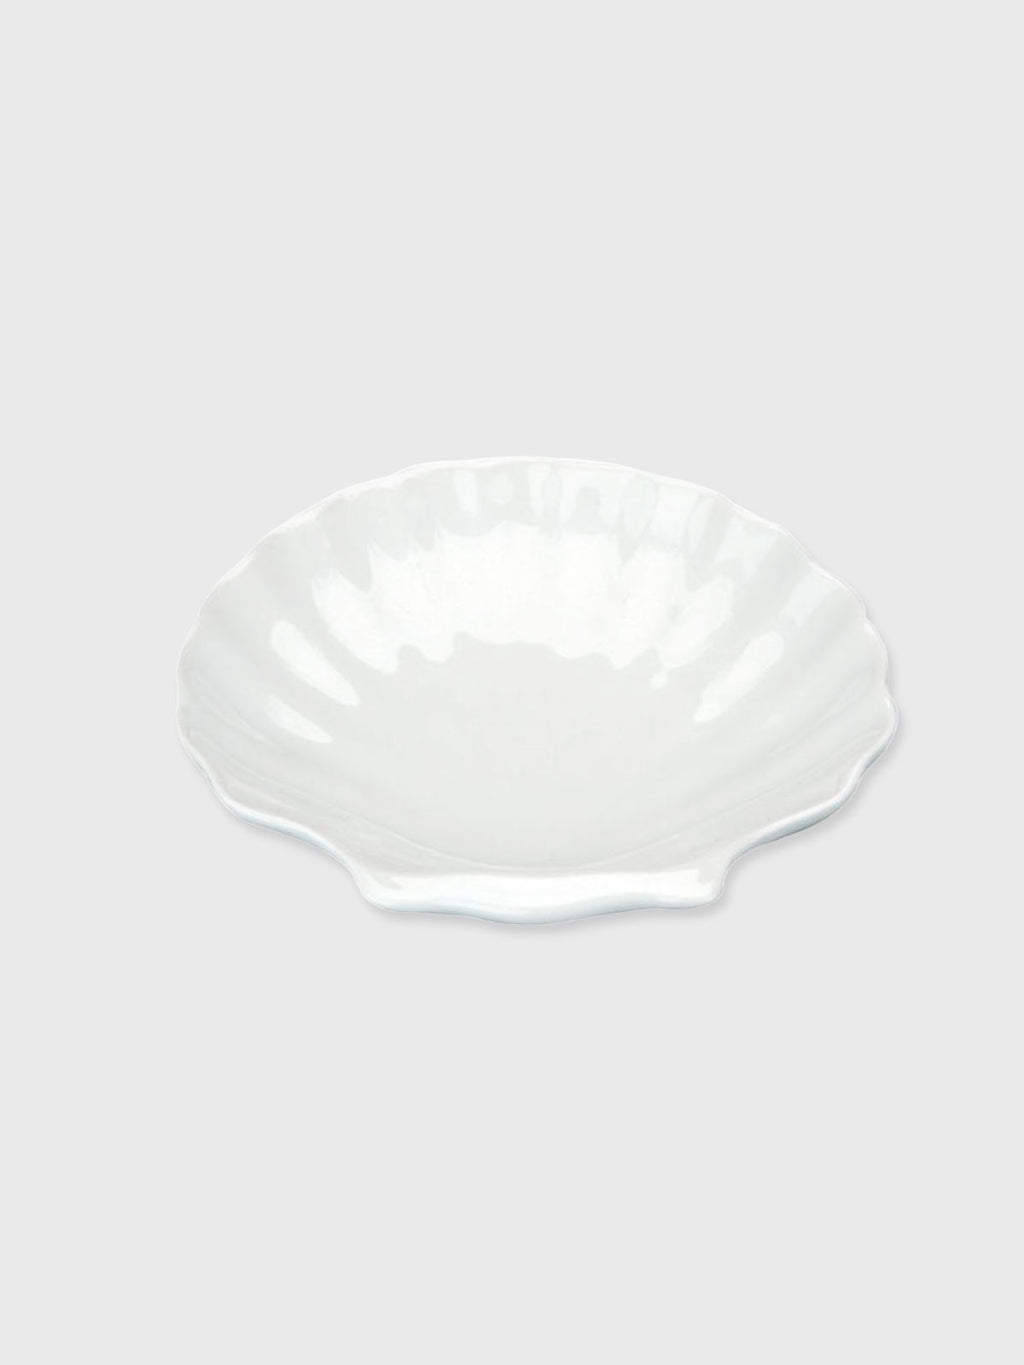 Ceramic Scallop Dish - White